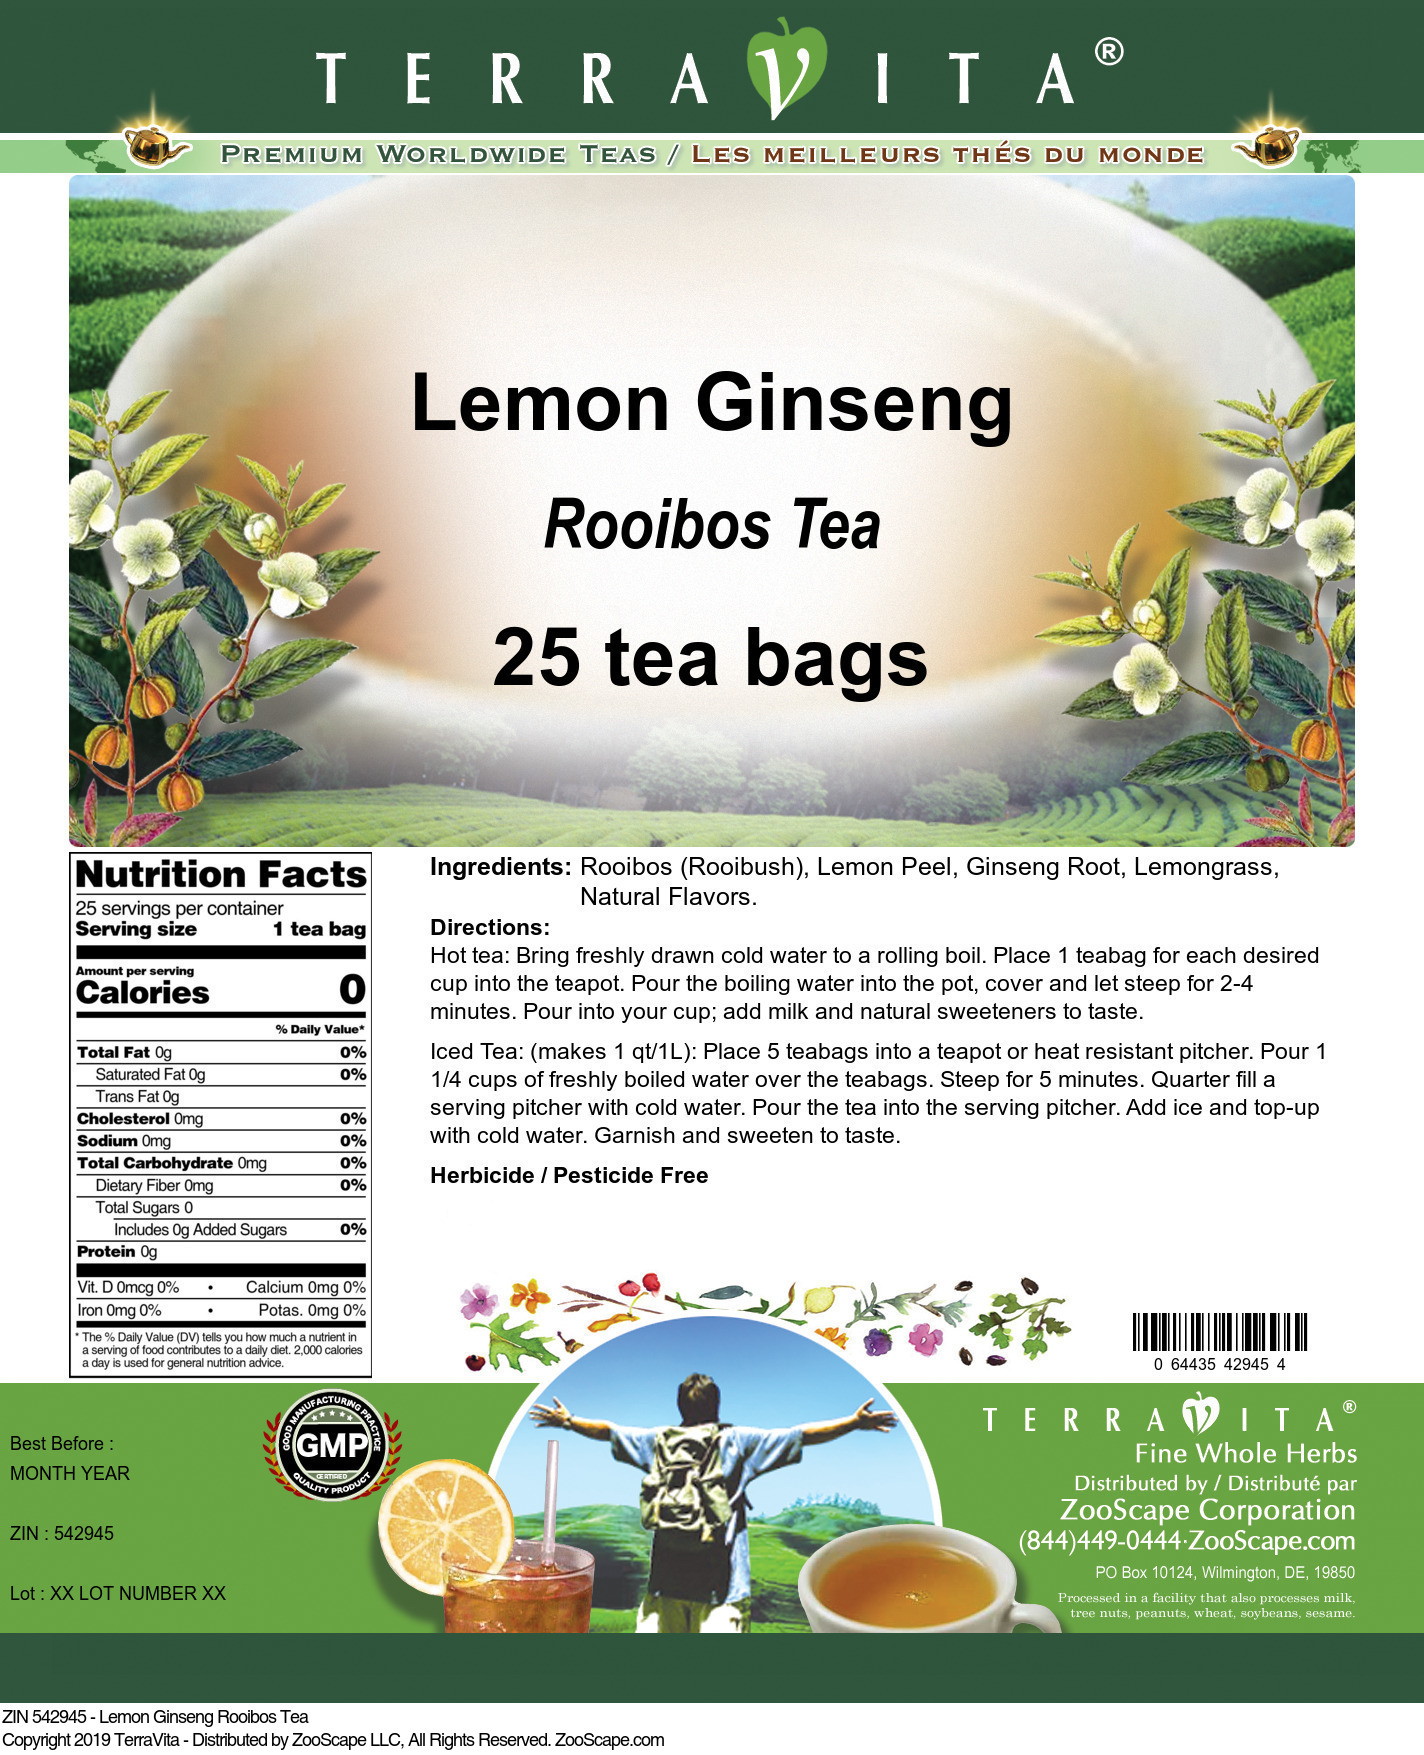 Lemon Ginseng Rooibos Tea - Label